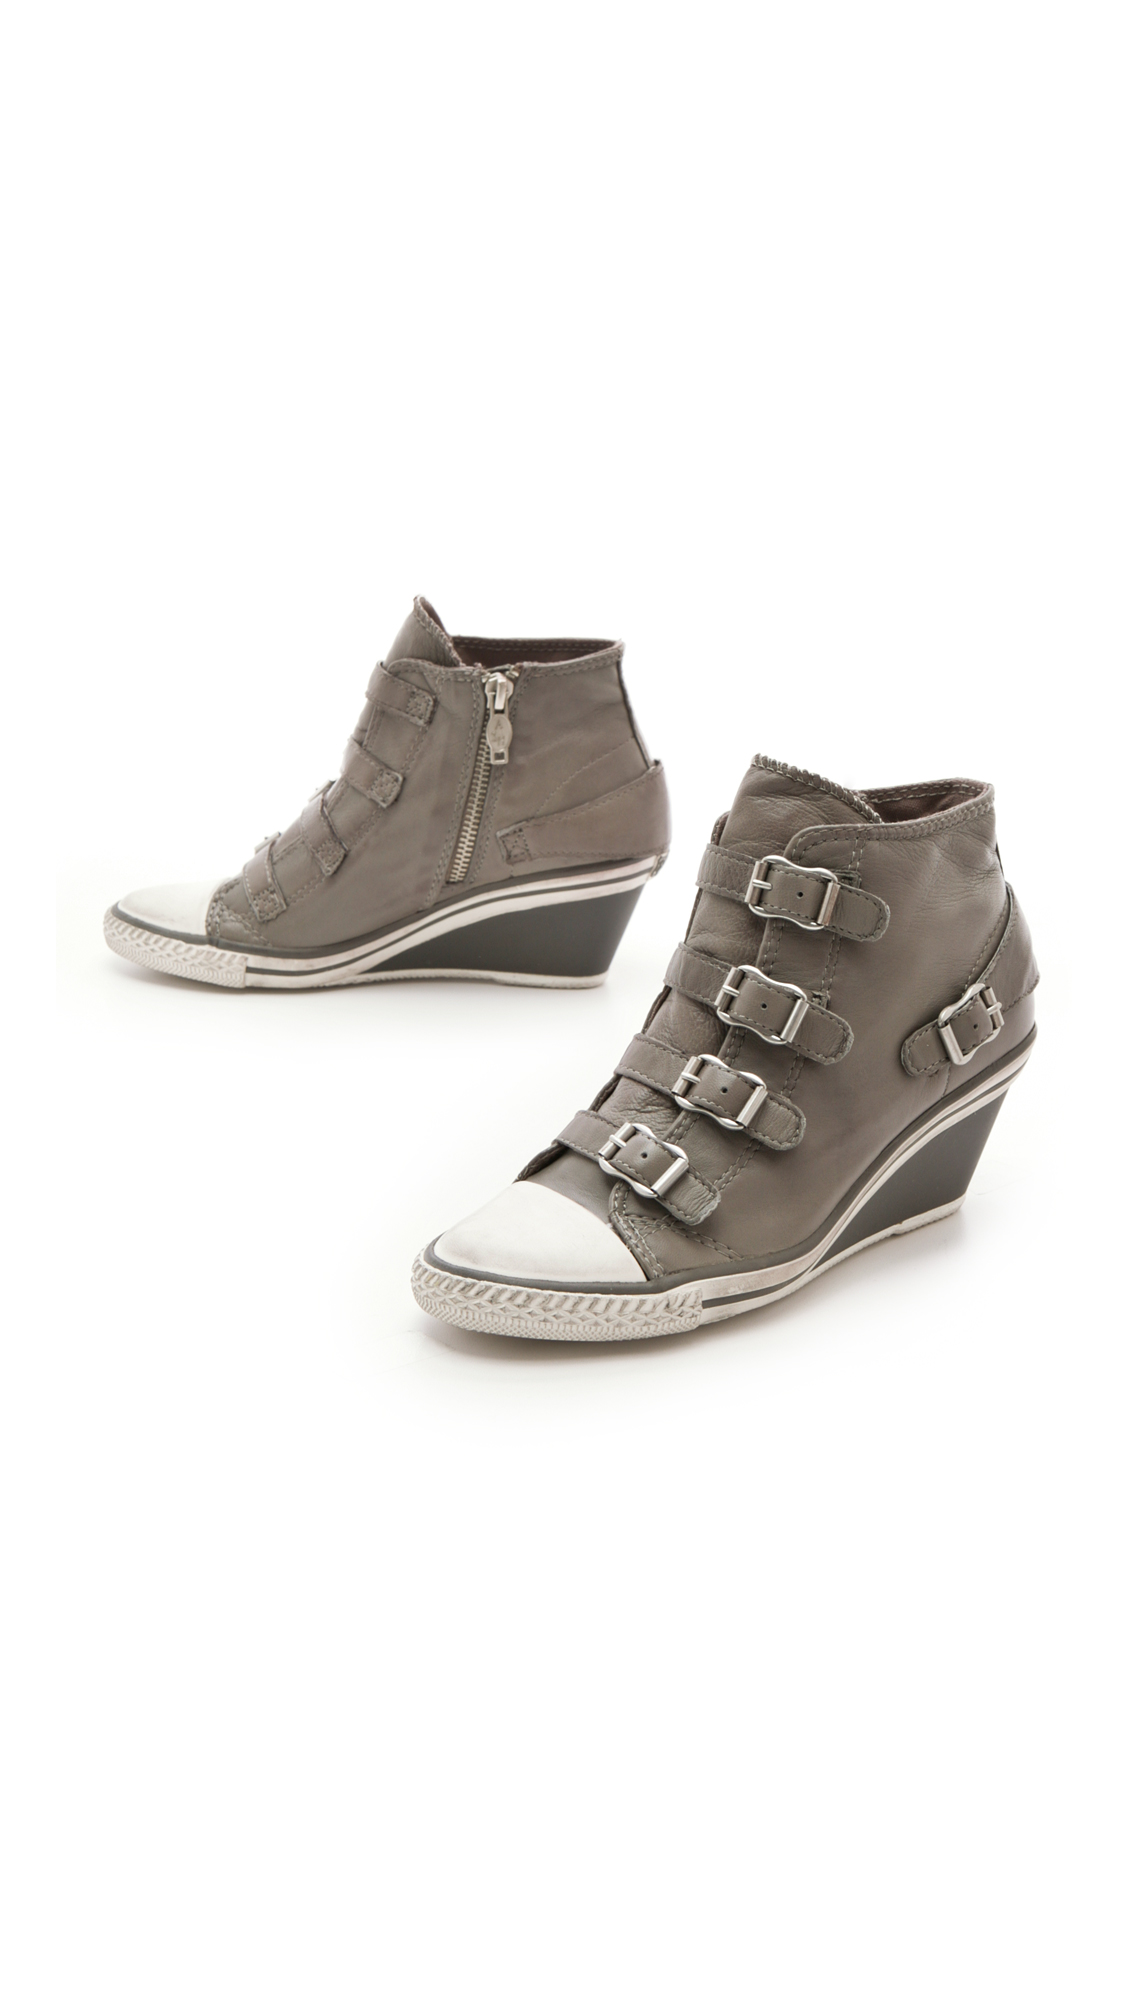 Ash Genial Wedge Sneakers in Gray - Lyst